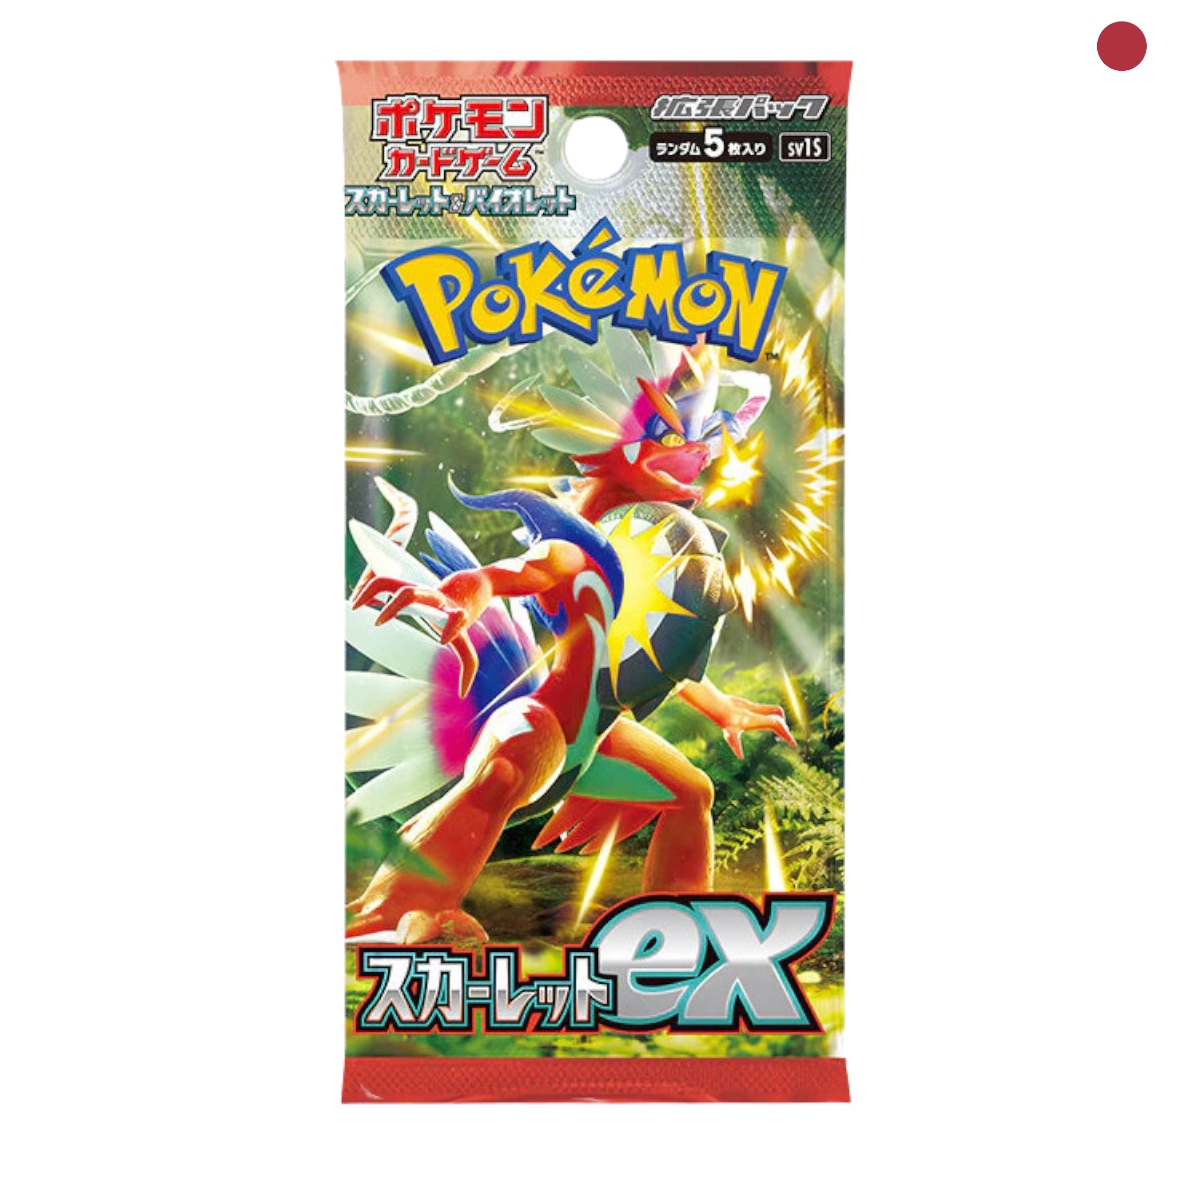 Pokémon - Scarlet EX sv1S Booster japanisch